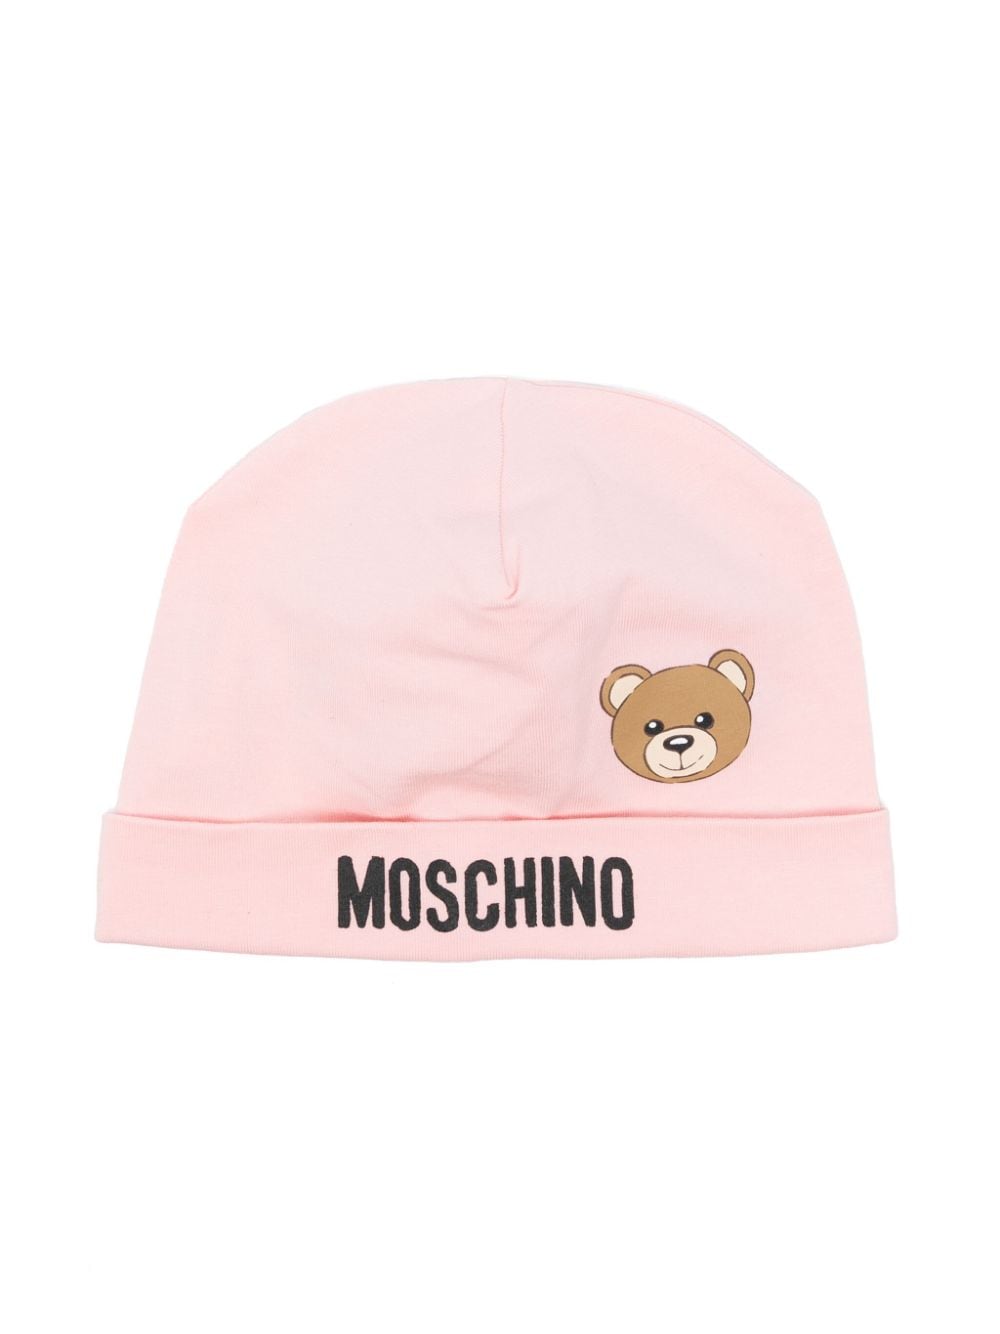 Cappello rosa stampa teddy bear neonata